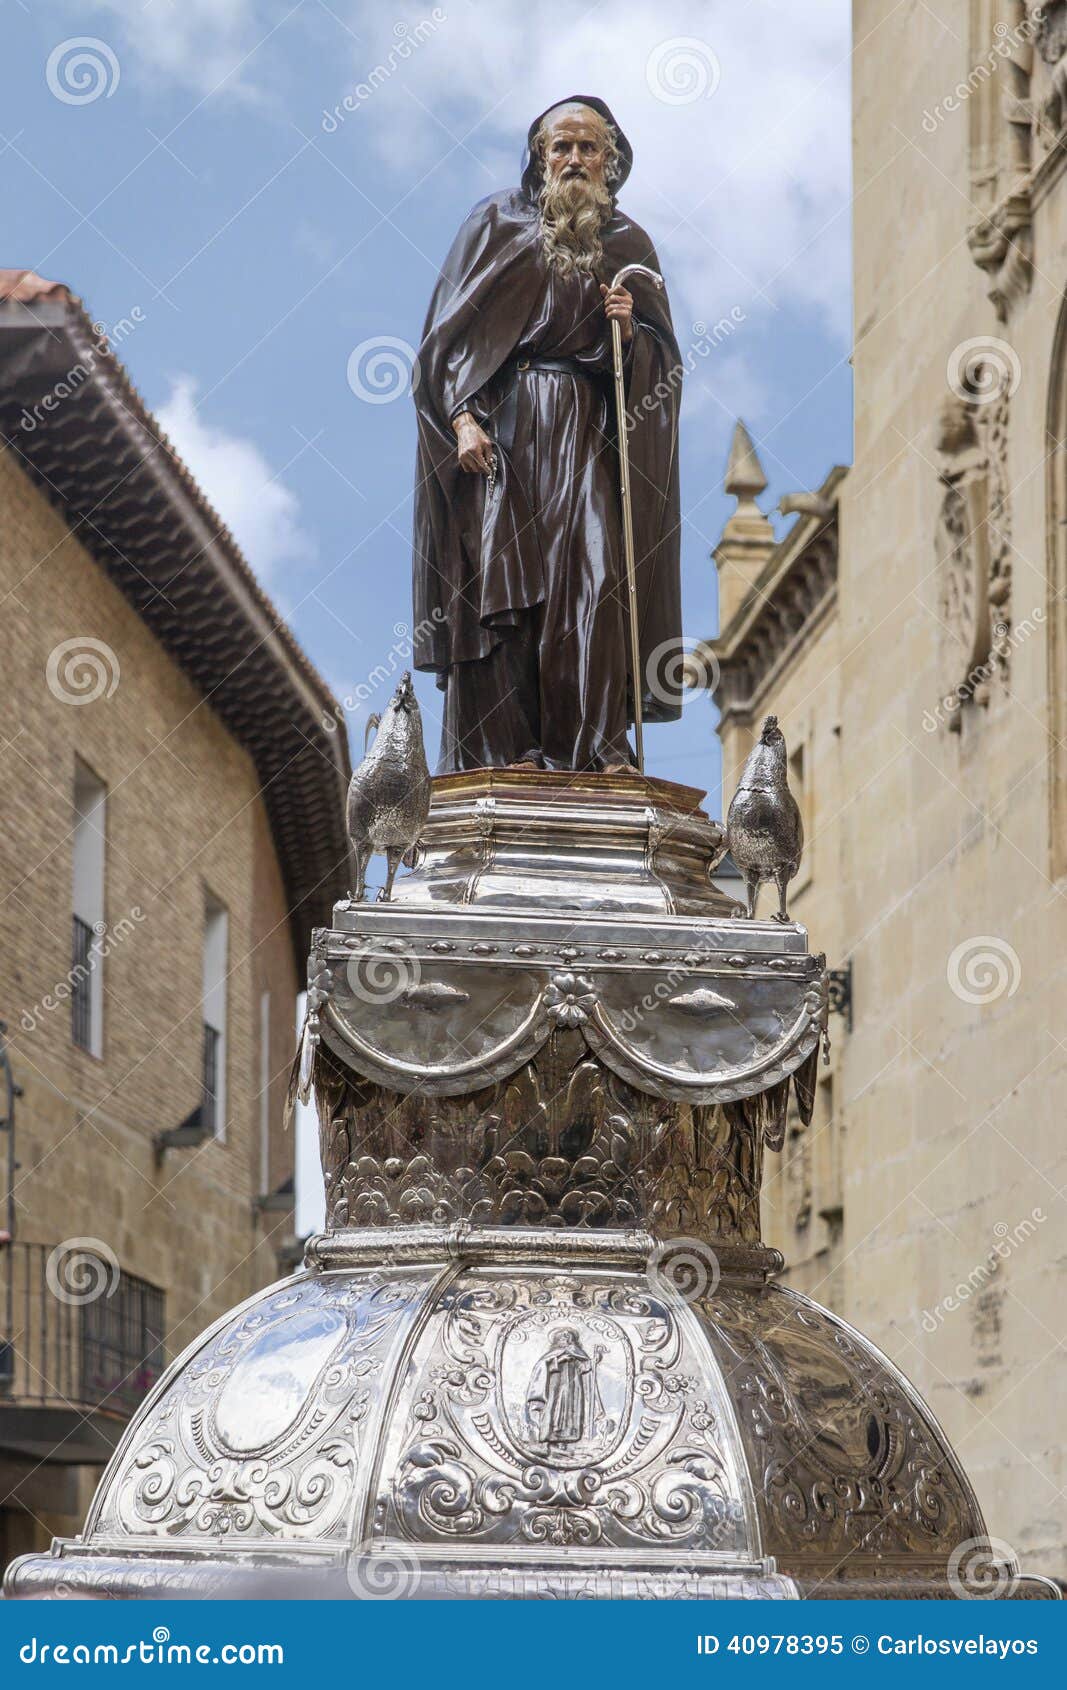 statue of santo domingo de la calzada, la rioja. spain.